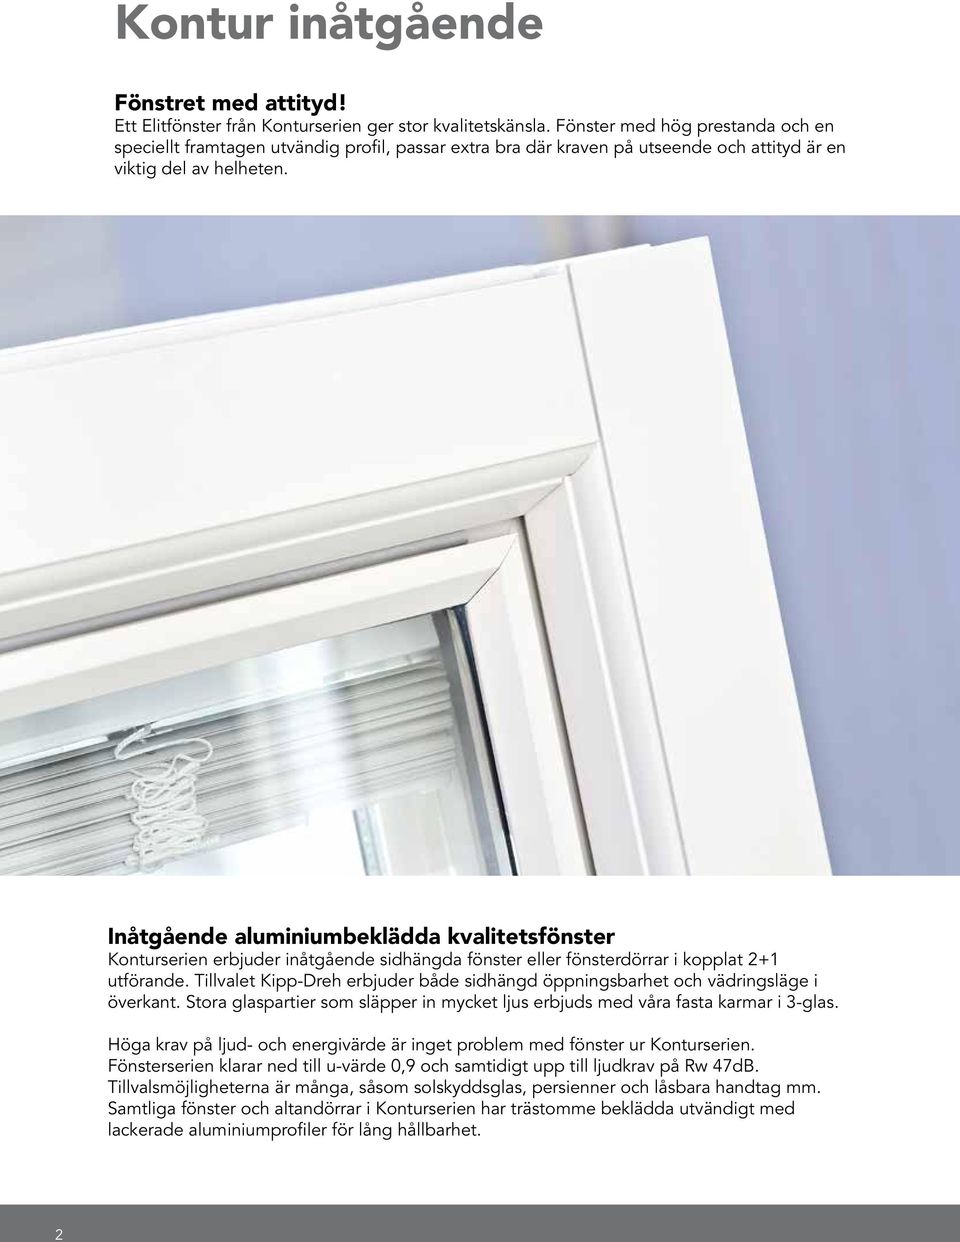 Inåtgående aluminiumbeklädda kvalitetsfönster Konturserien erbjuder inåtgående sidhängda fönster eller fönsterdörrar i kopplat 2+1 utförande.